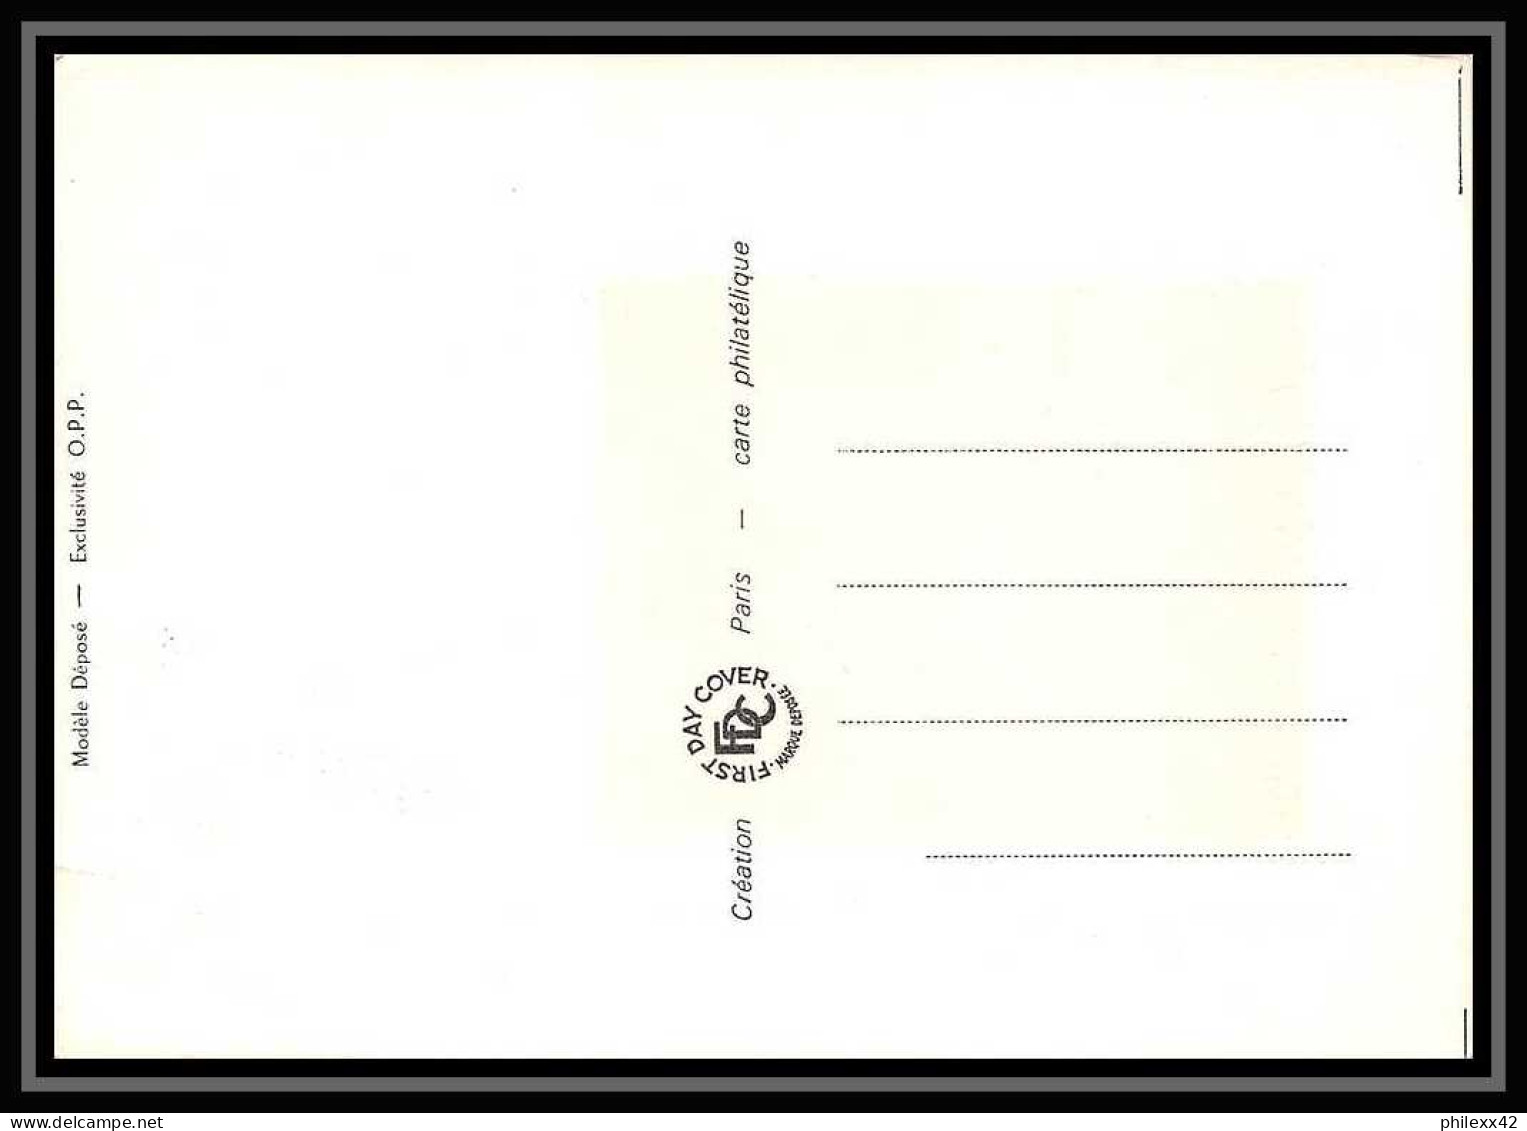 2446/ Carte Maximum (card) France N°1634 Flamant Rose Oiseaux (birds) Edition 1970 Fdc Premier Jour - Storchenvögel